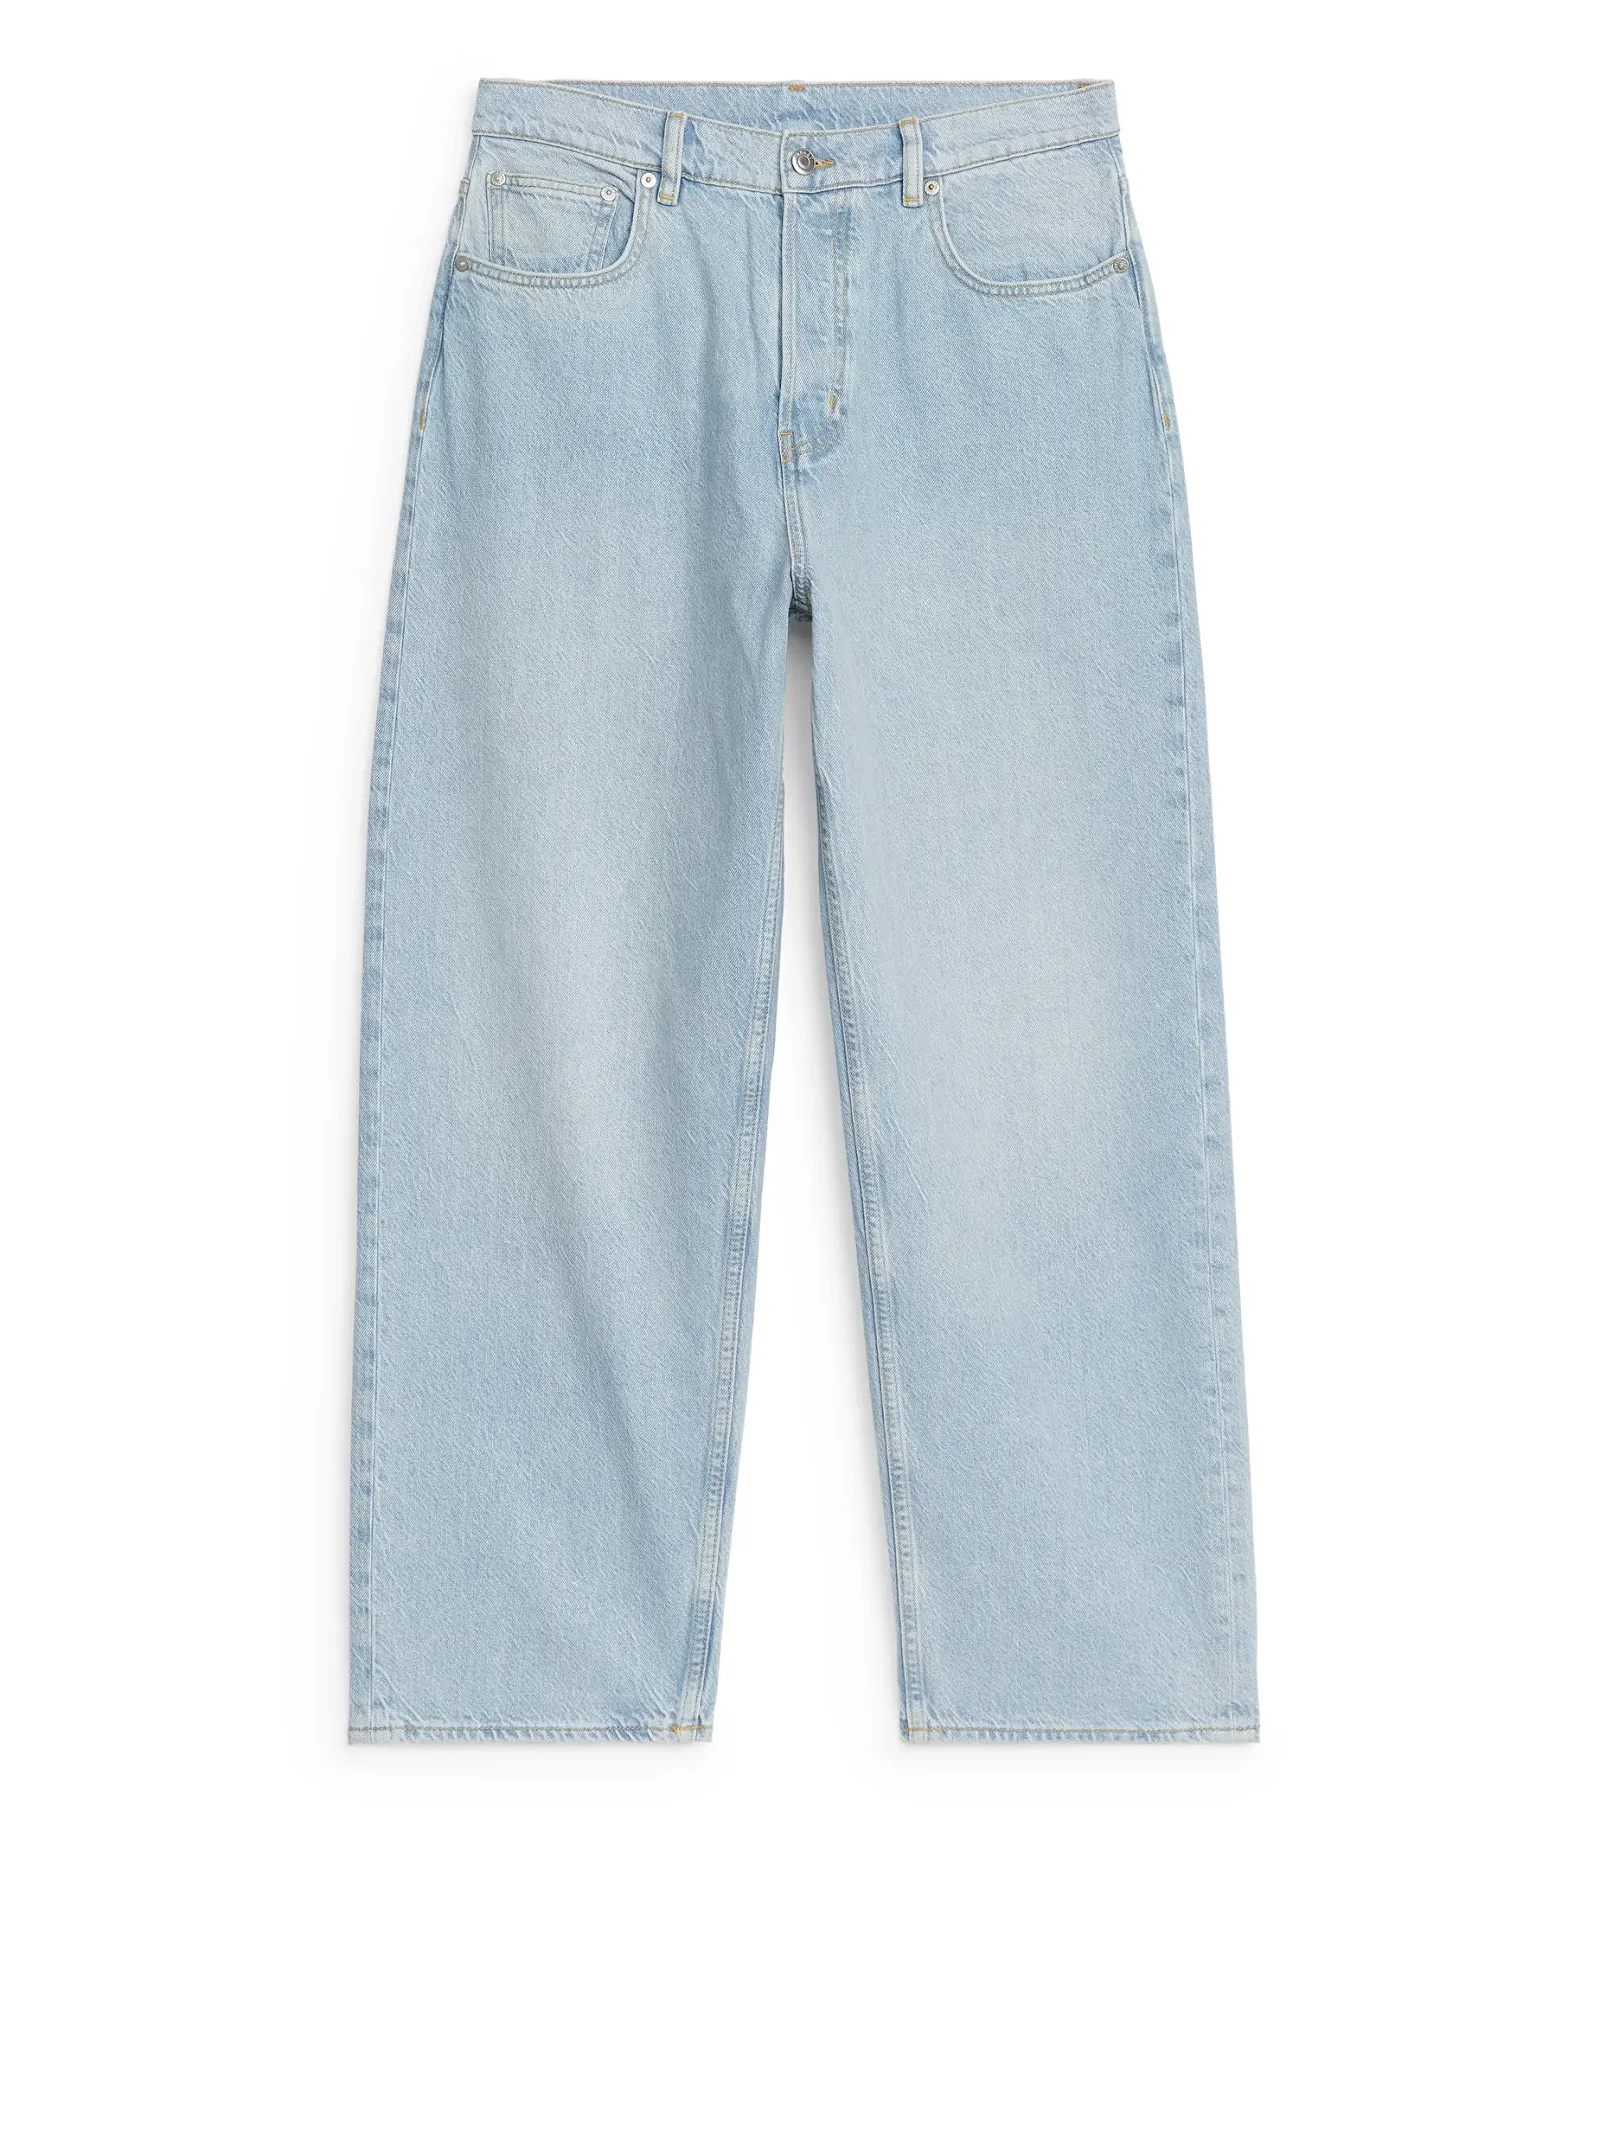 ARKET Mist Wide Jeans in Light Blue | Endource